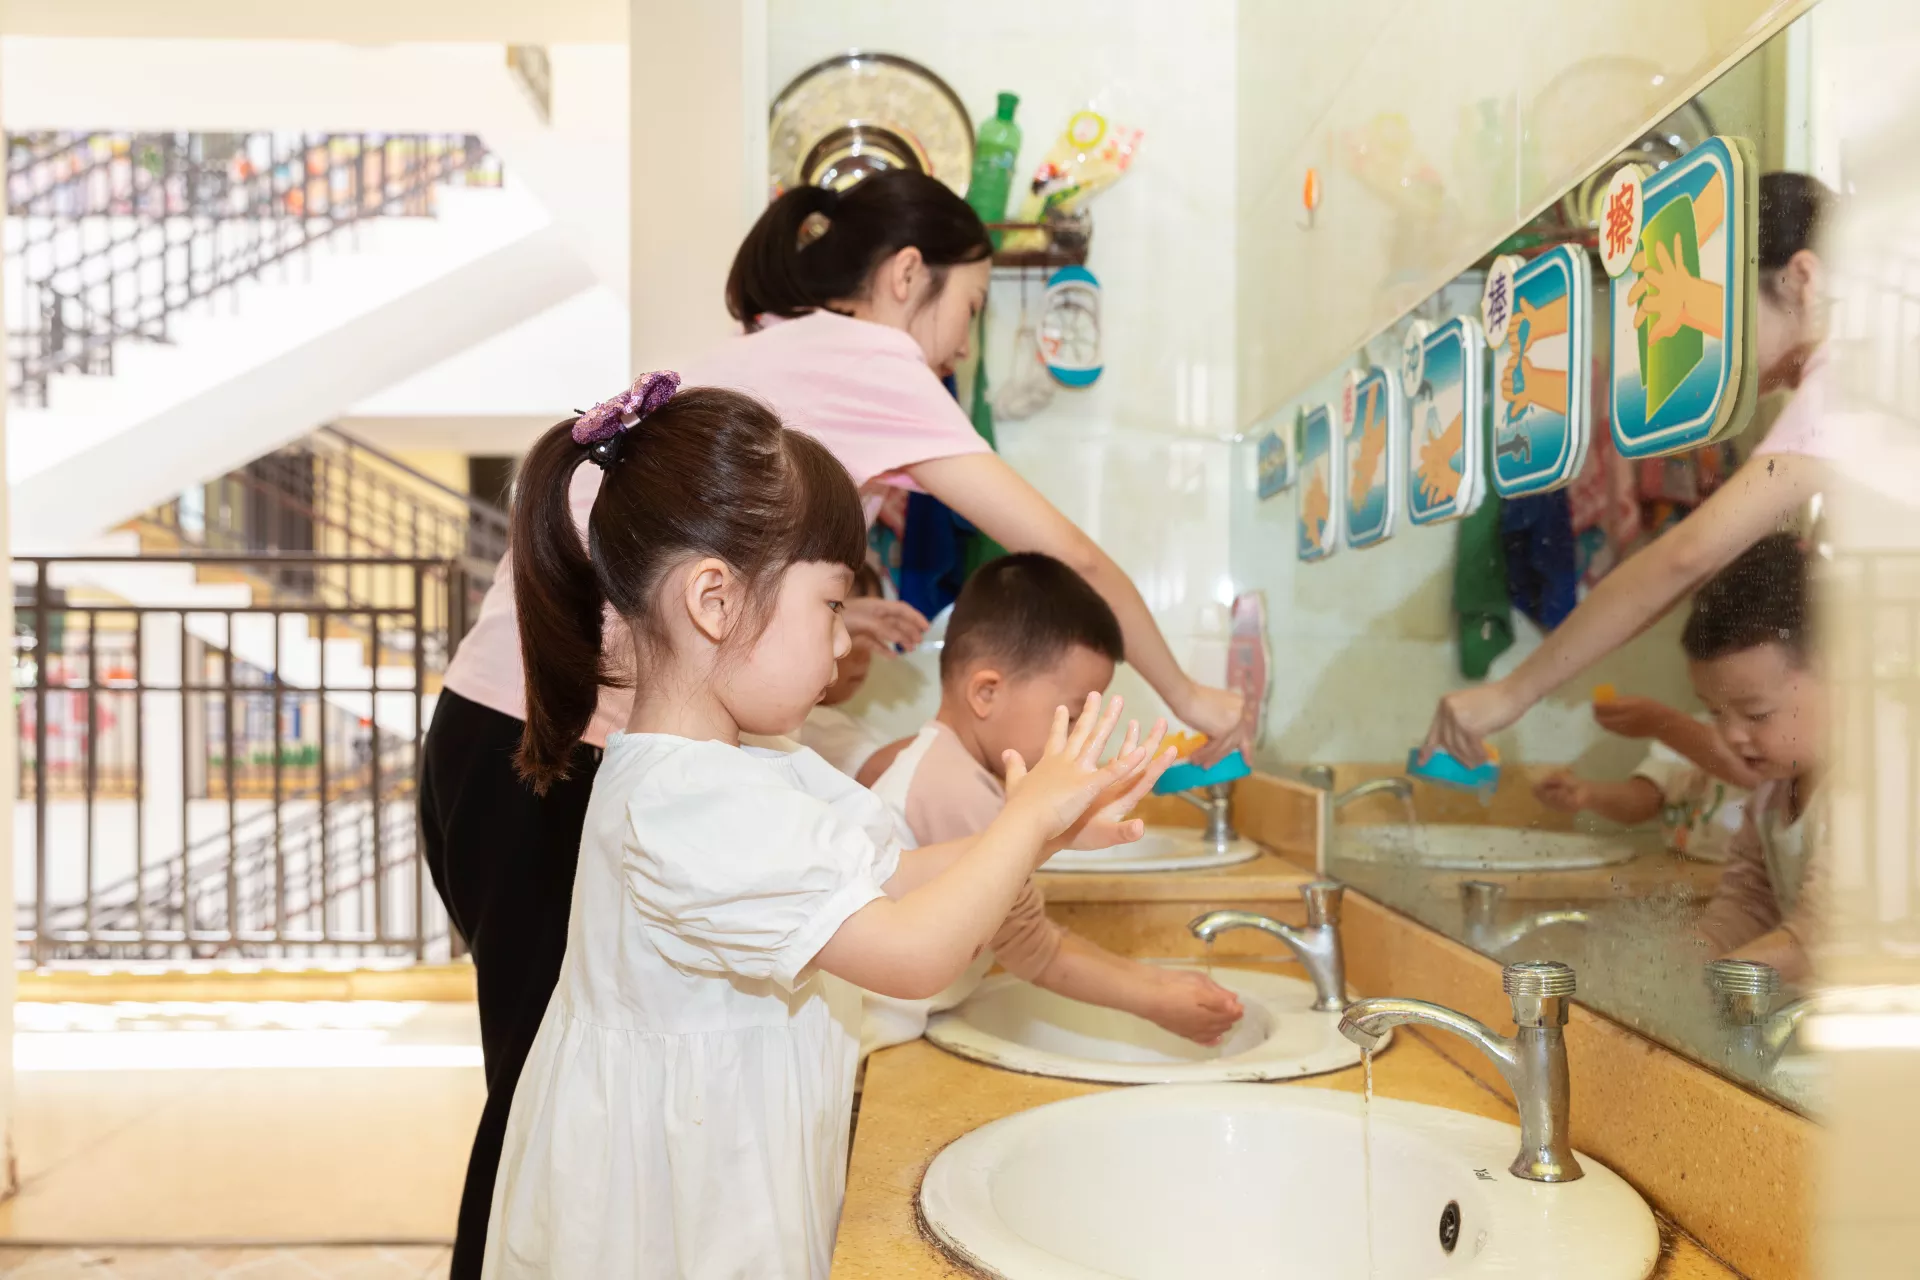 Children wash hands with soap at Zhongzhou Kindergarten of Zhong County in Chongqing, China on 4 June 2020.